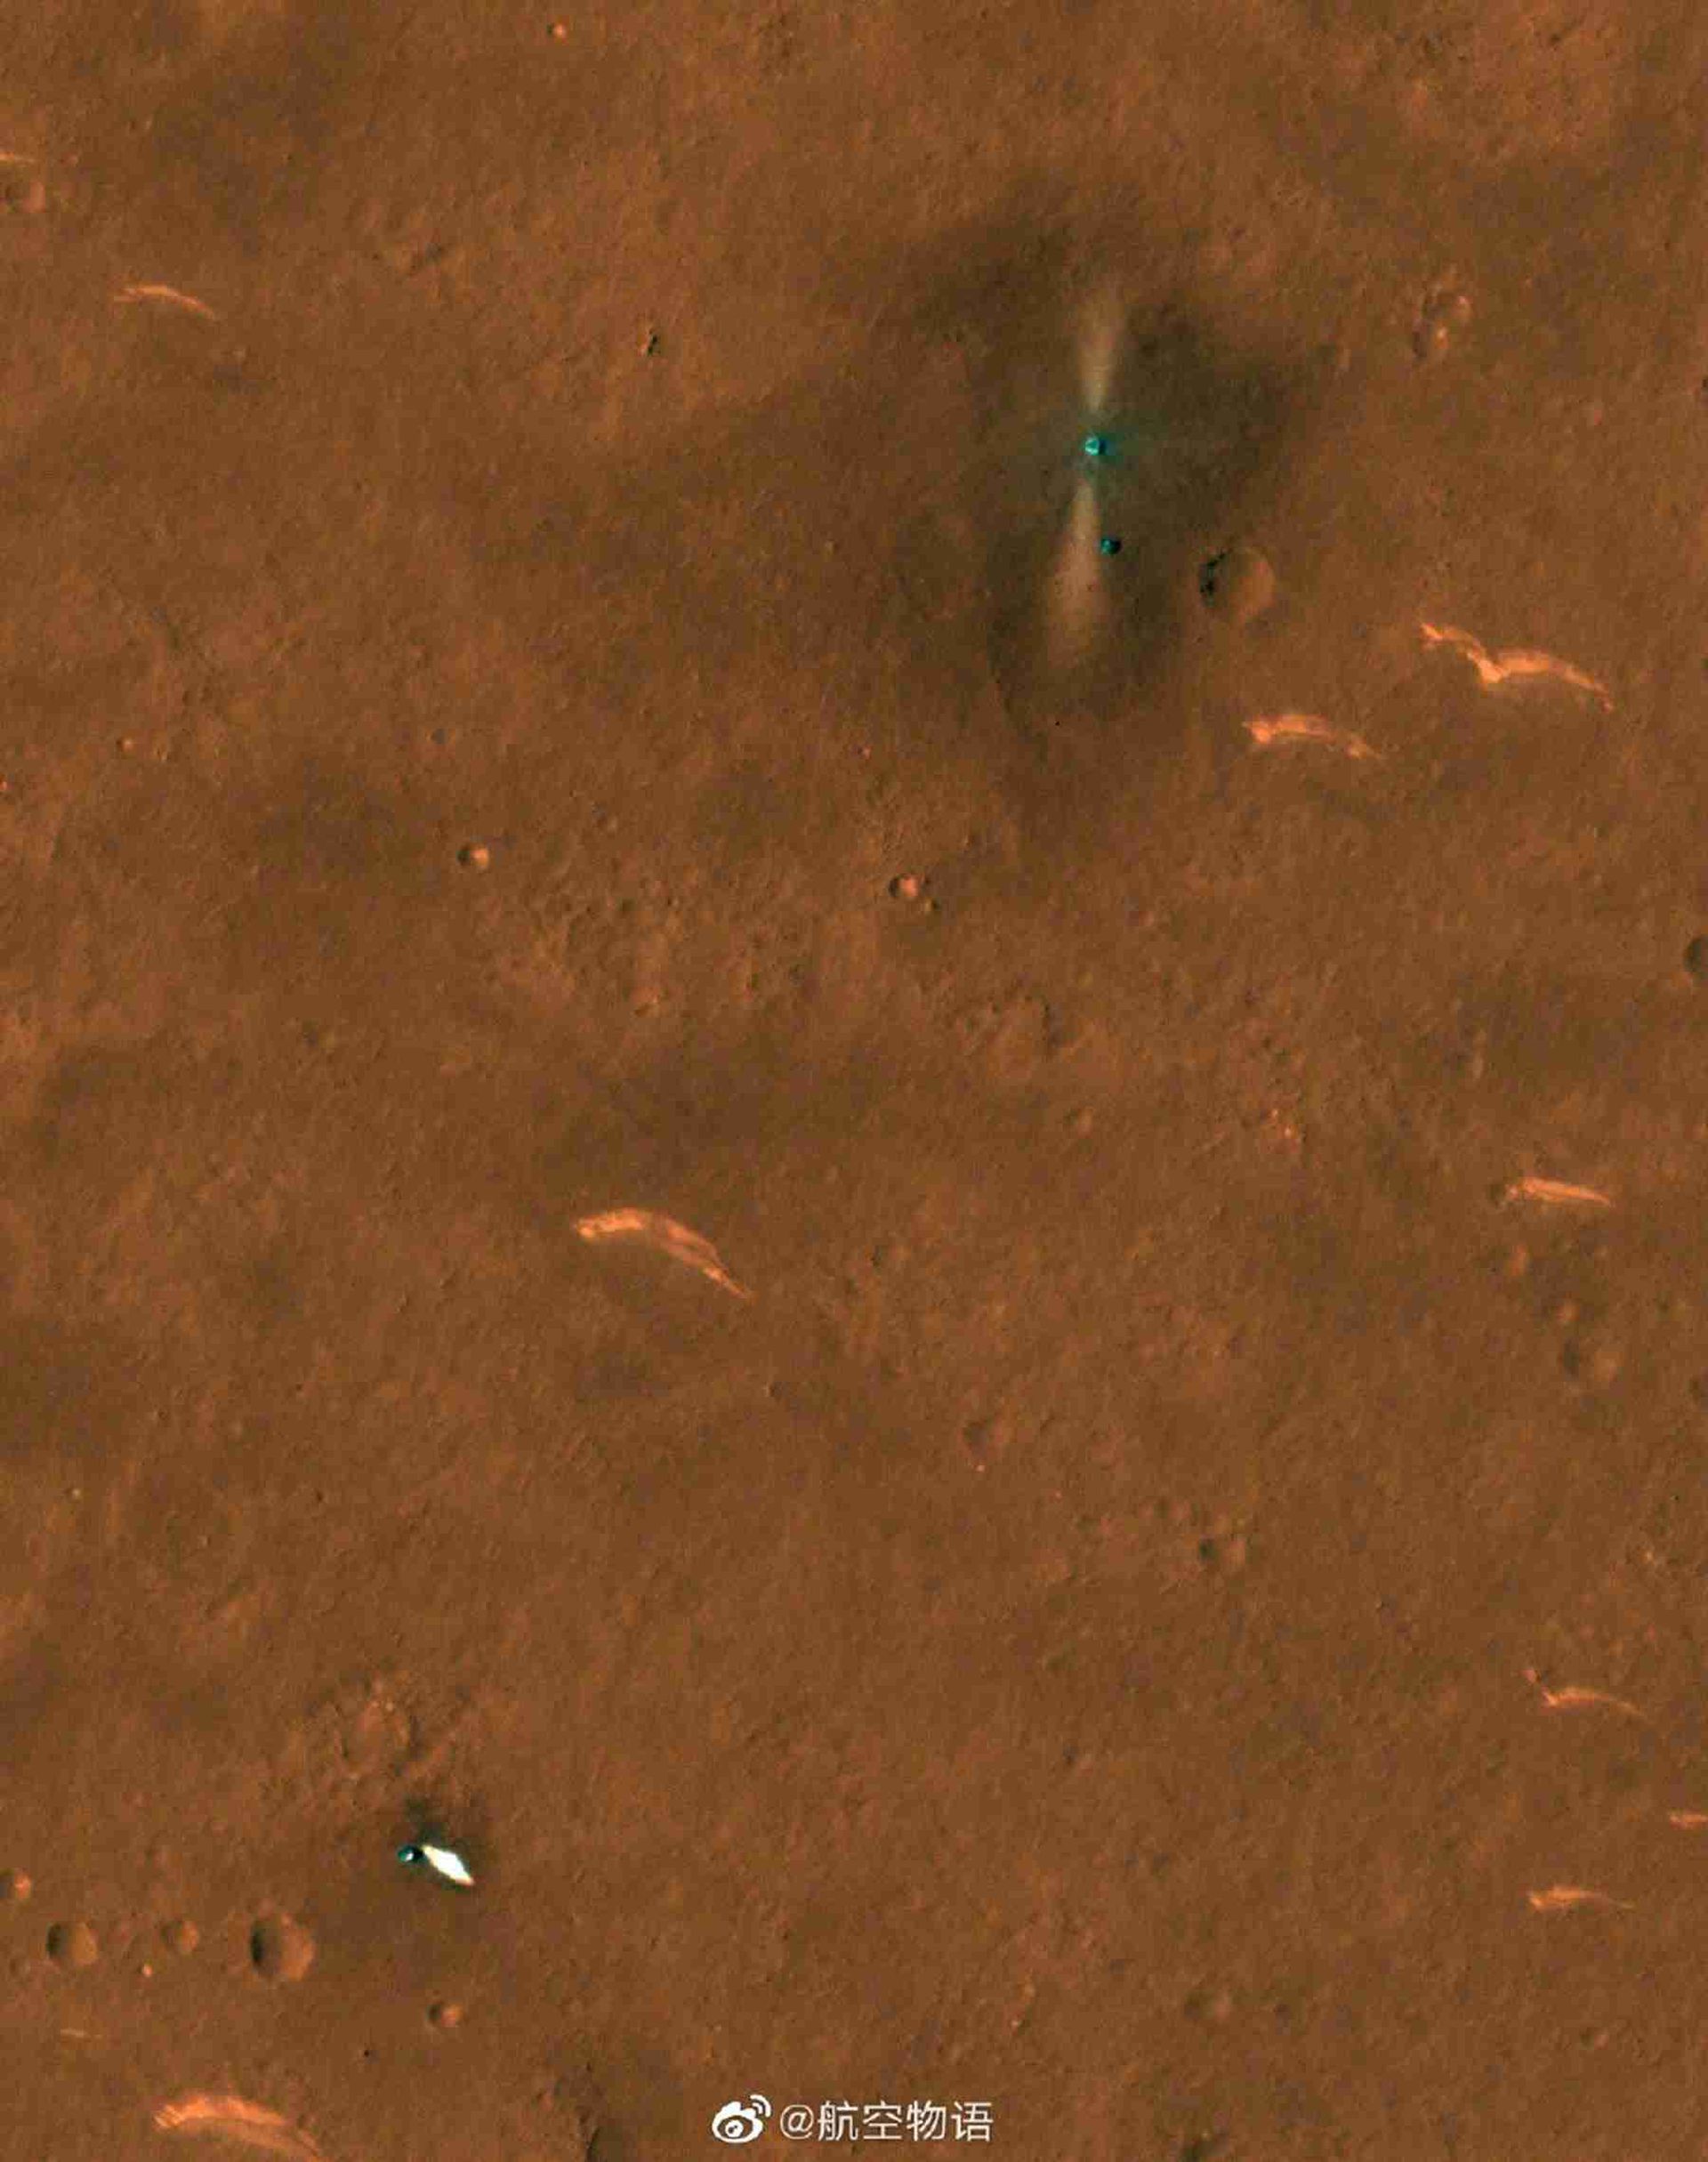 网传美国火星勘测轨道器高清相机拍到的中国火星着陆器和祝融号火星车。（微博@航空物语）